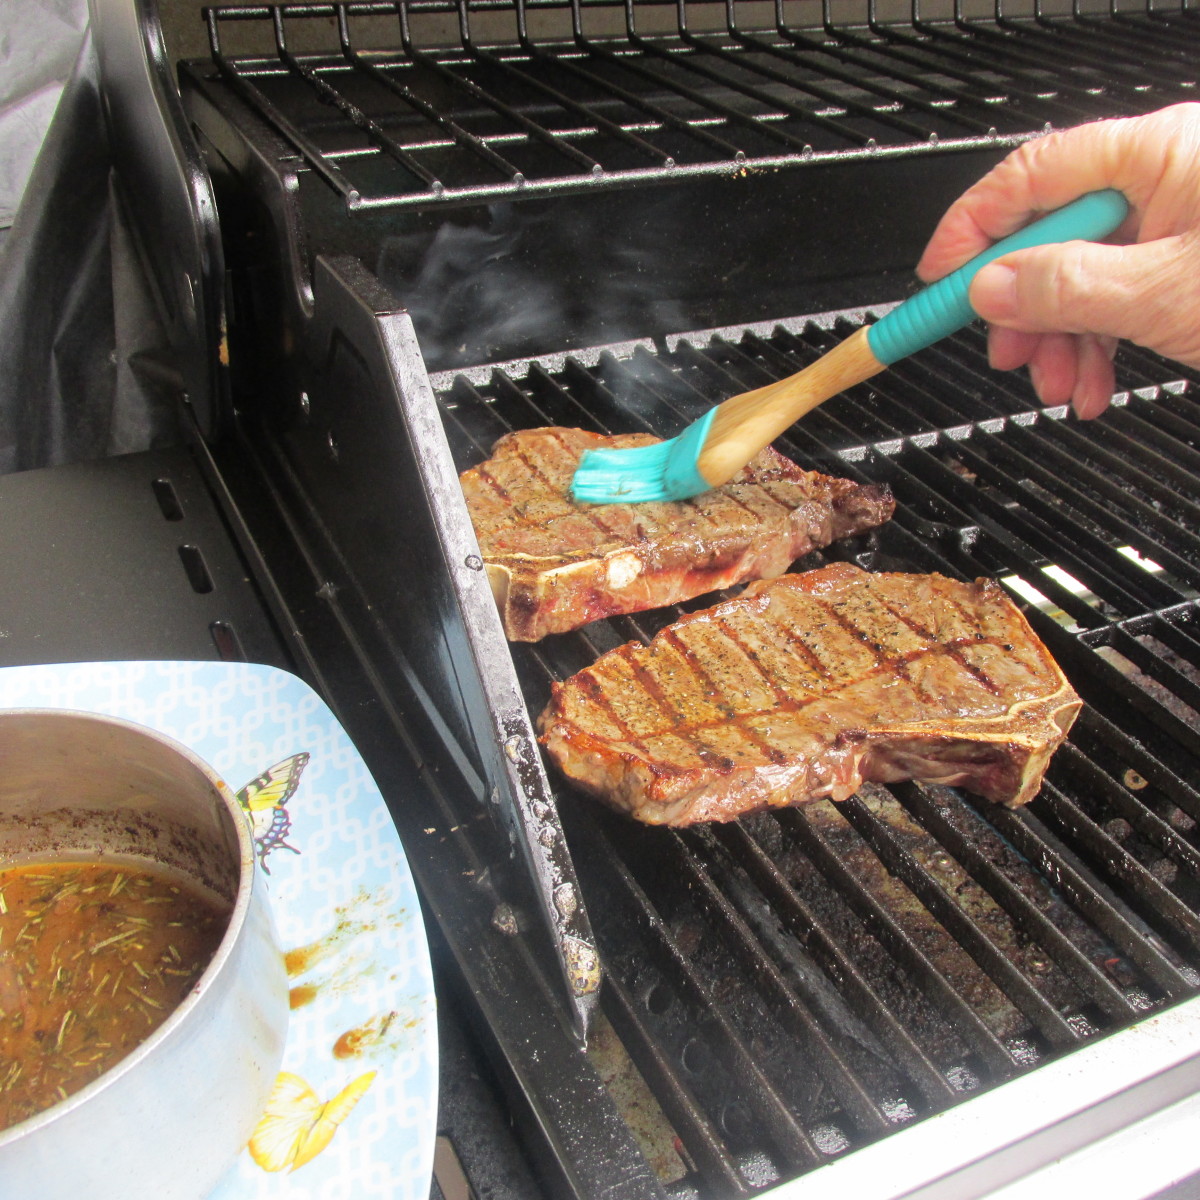 Brushing the homemade steak sauce on the steaks